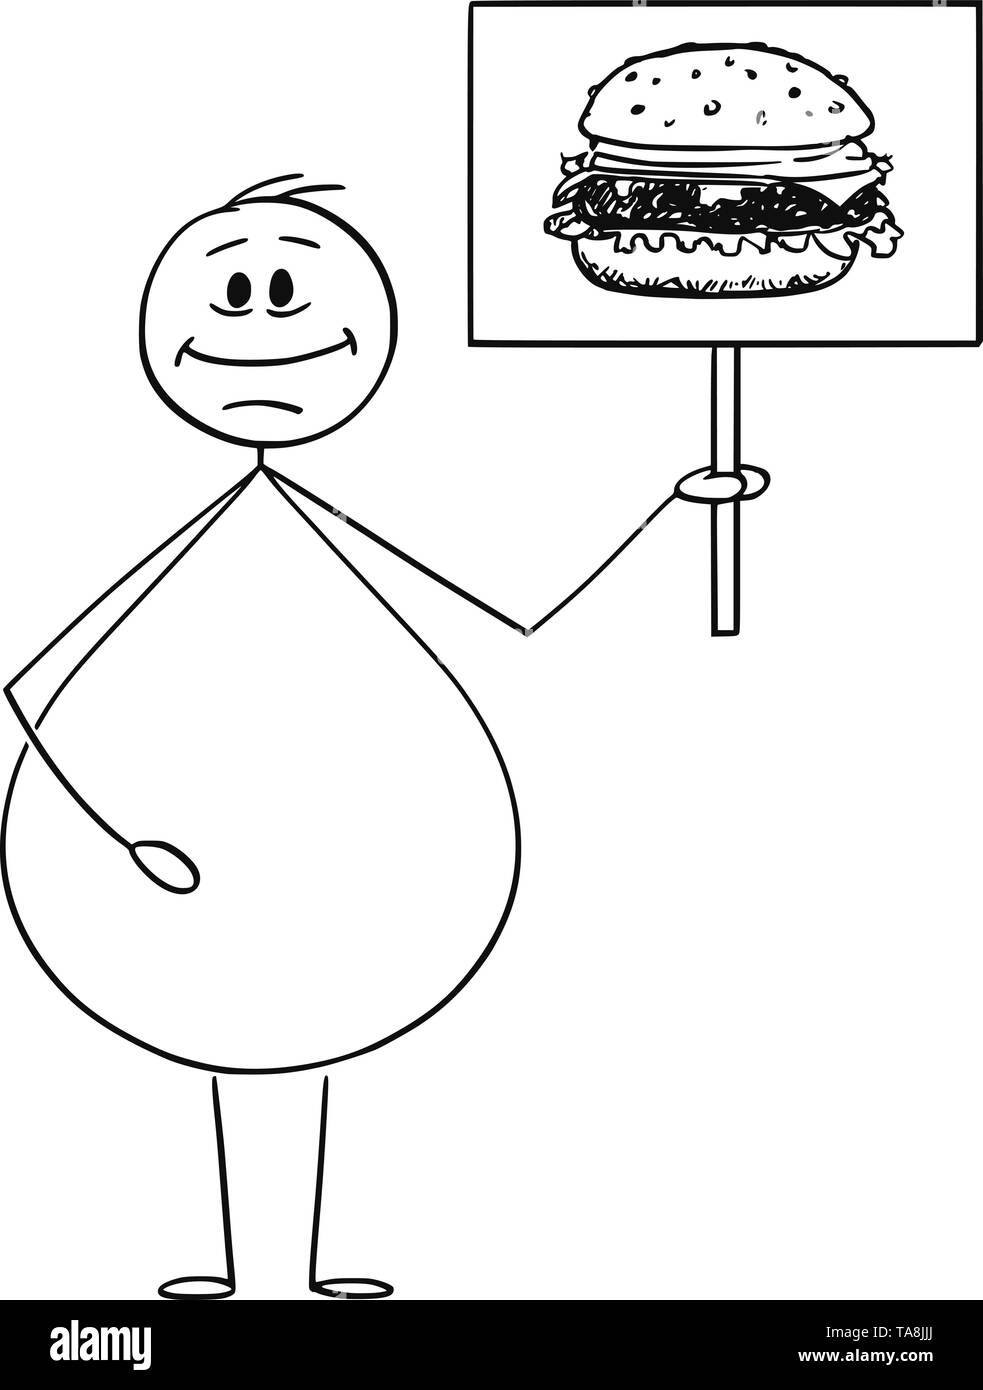 Vector cartoon stick figure dessin illustration conceptuelle de l'embonpoint ou sont obèses smiling man holding sign avec hamburger burger ou image. Junk Food concept. Illustration de Vecteur